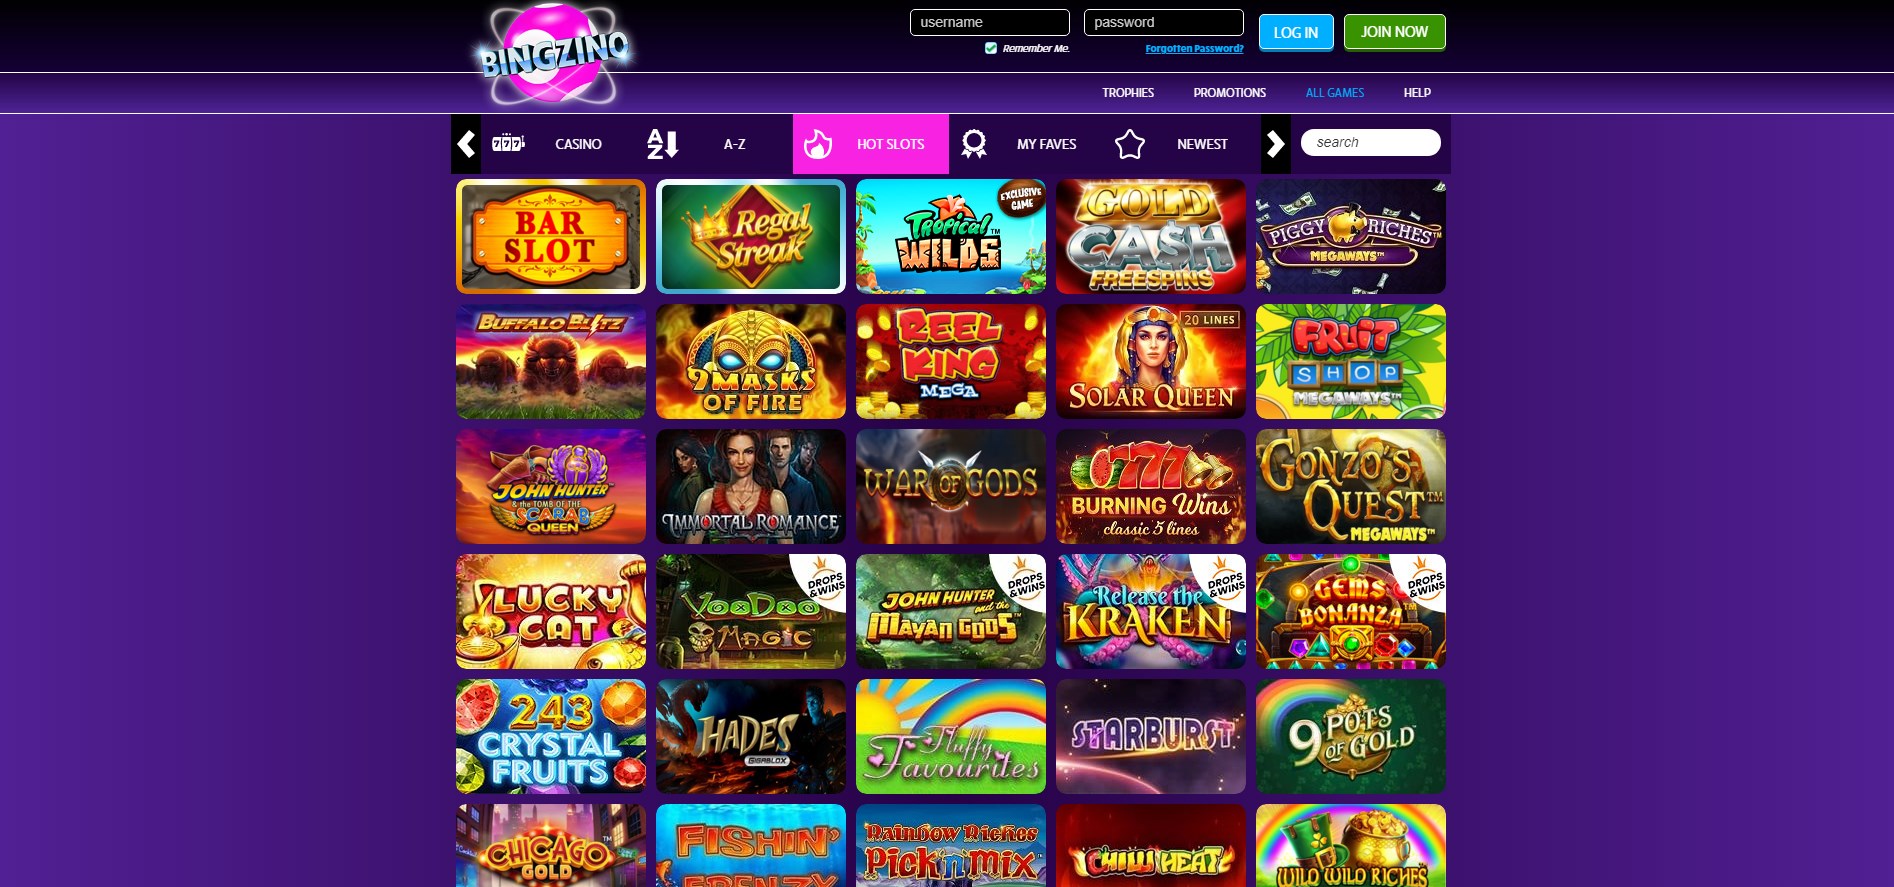 Bingzino Casino Games